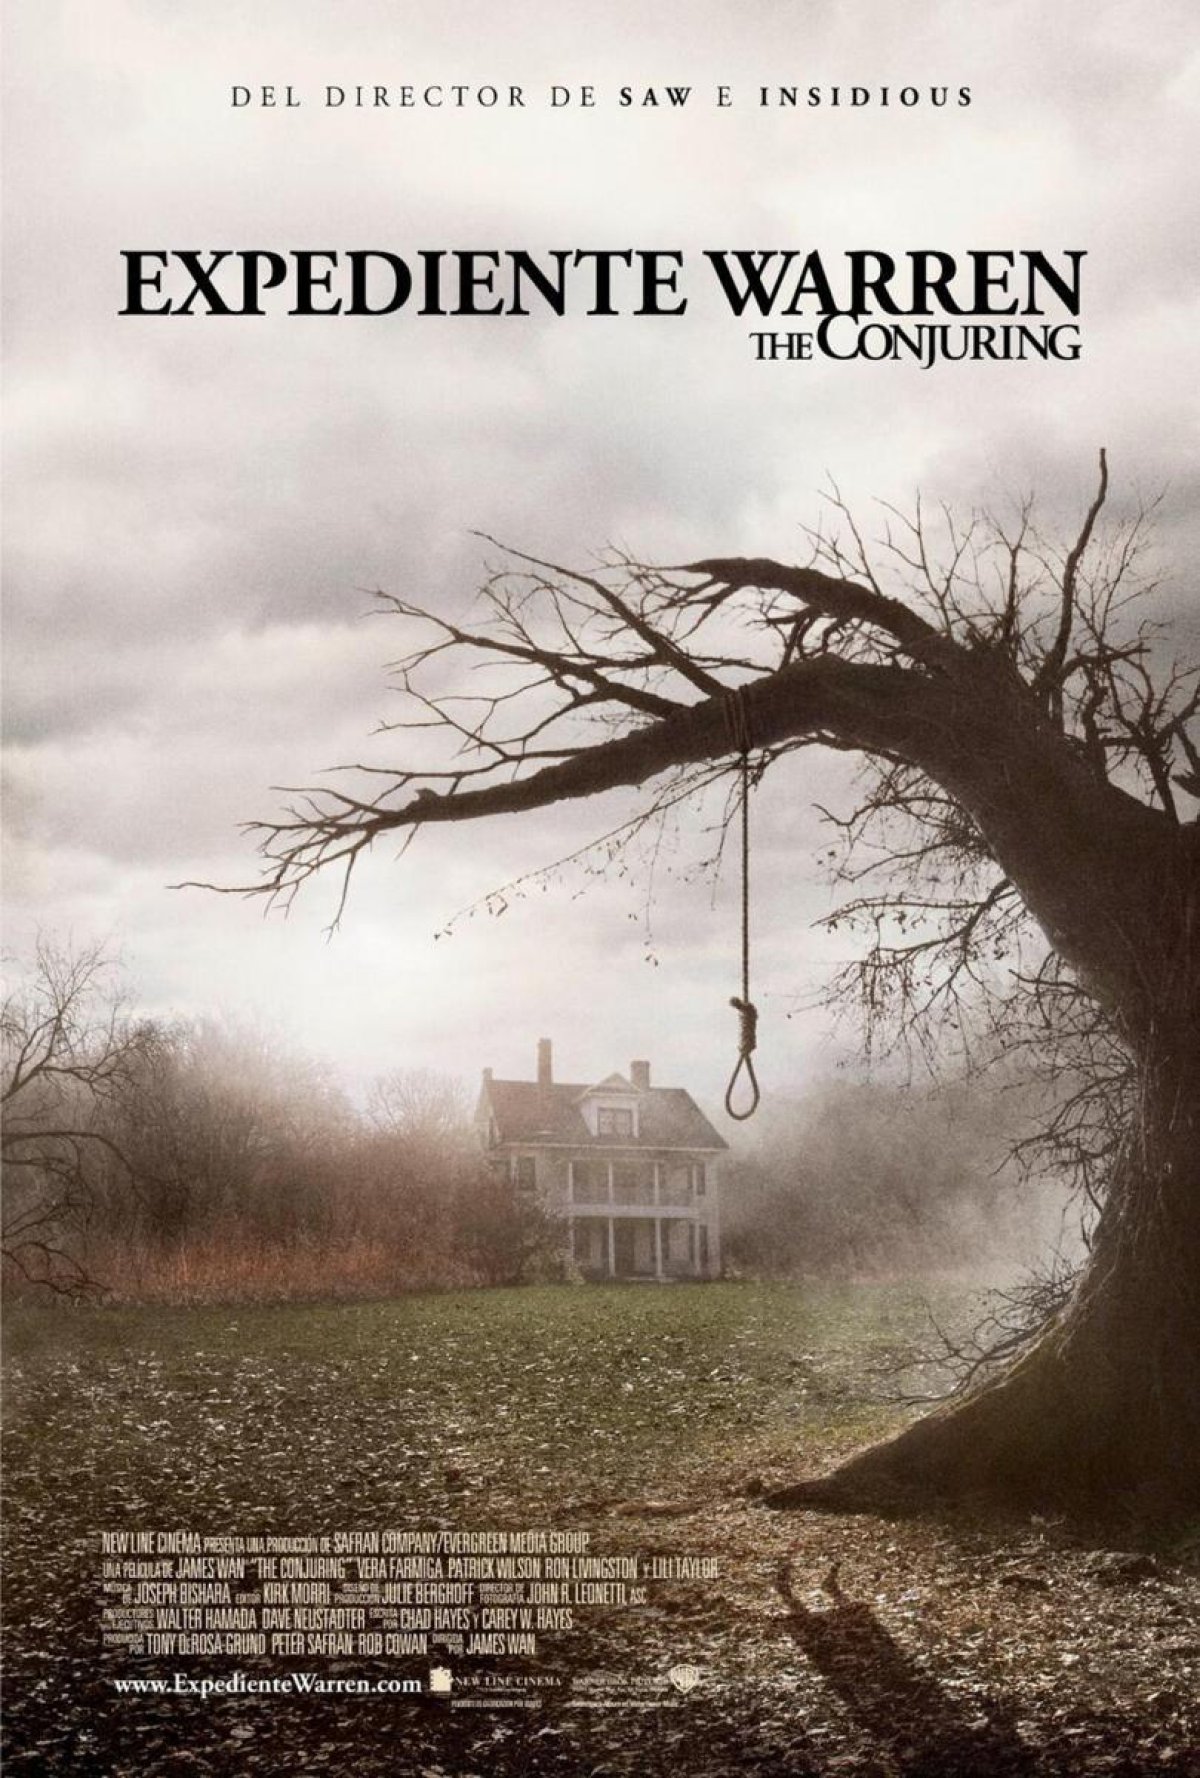 Expediente Warren (2013), James Wan